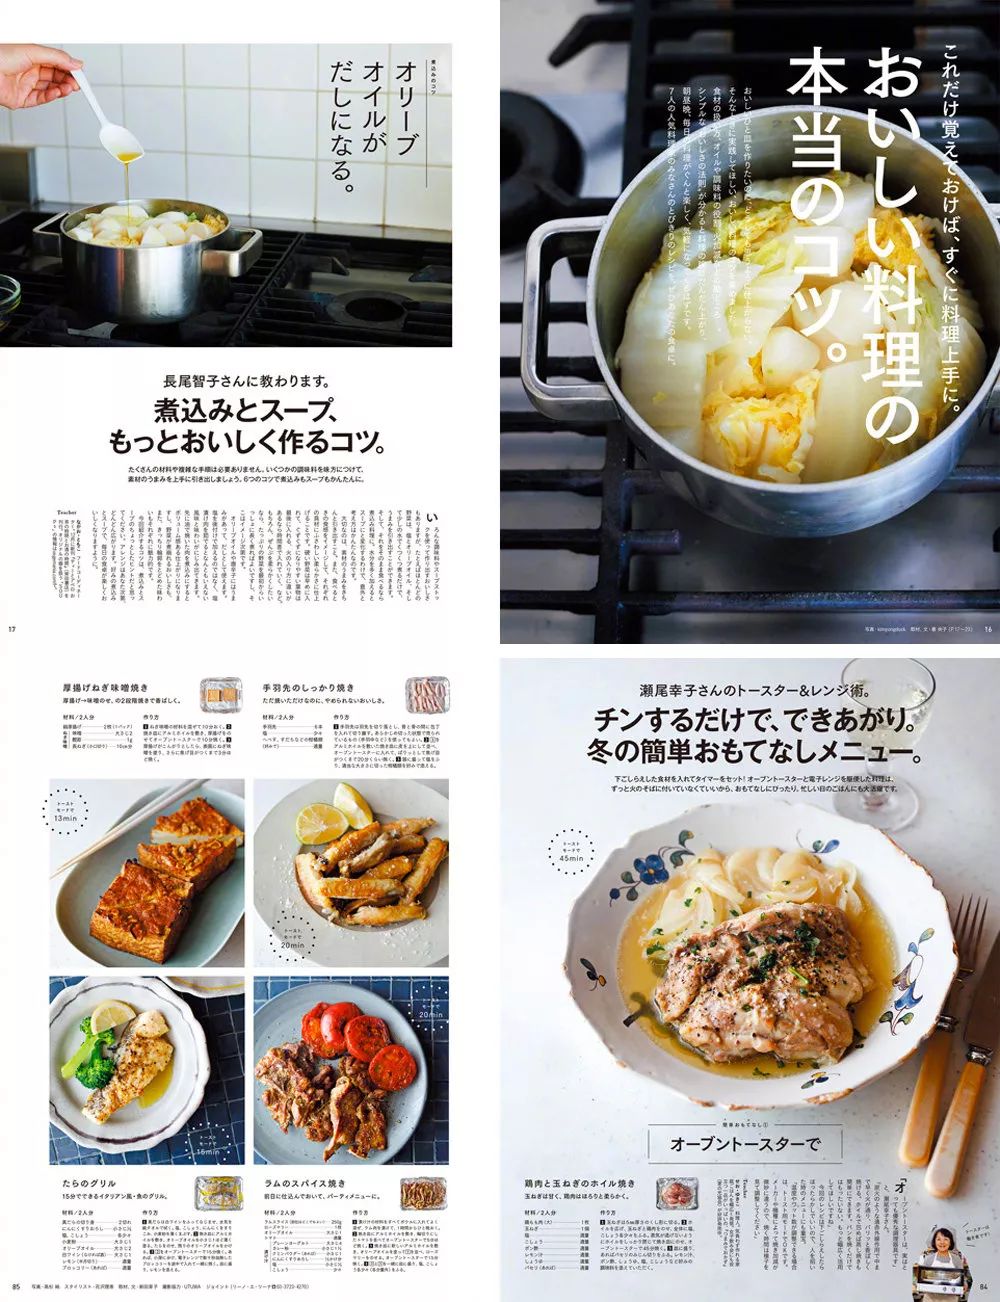 日本杂志内页版面设计欣赏